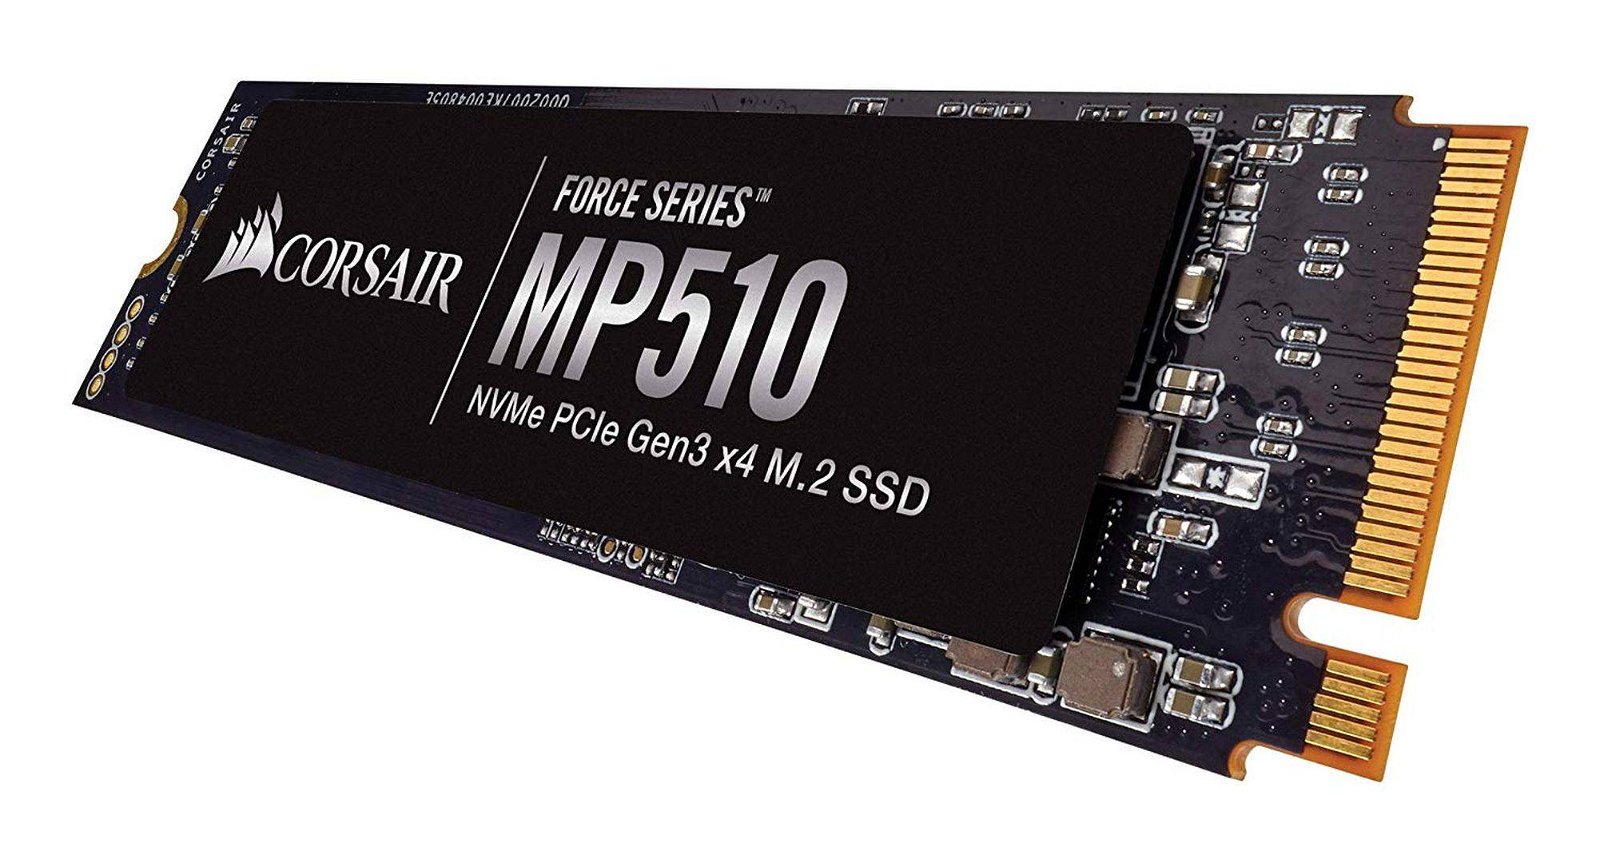 Immagine di Recensione Corsair Force MP510, un SSD che lascia buone impressioni